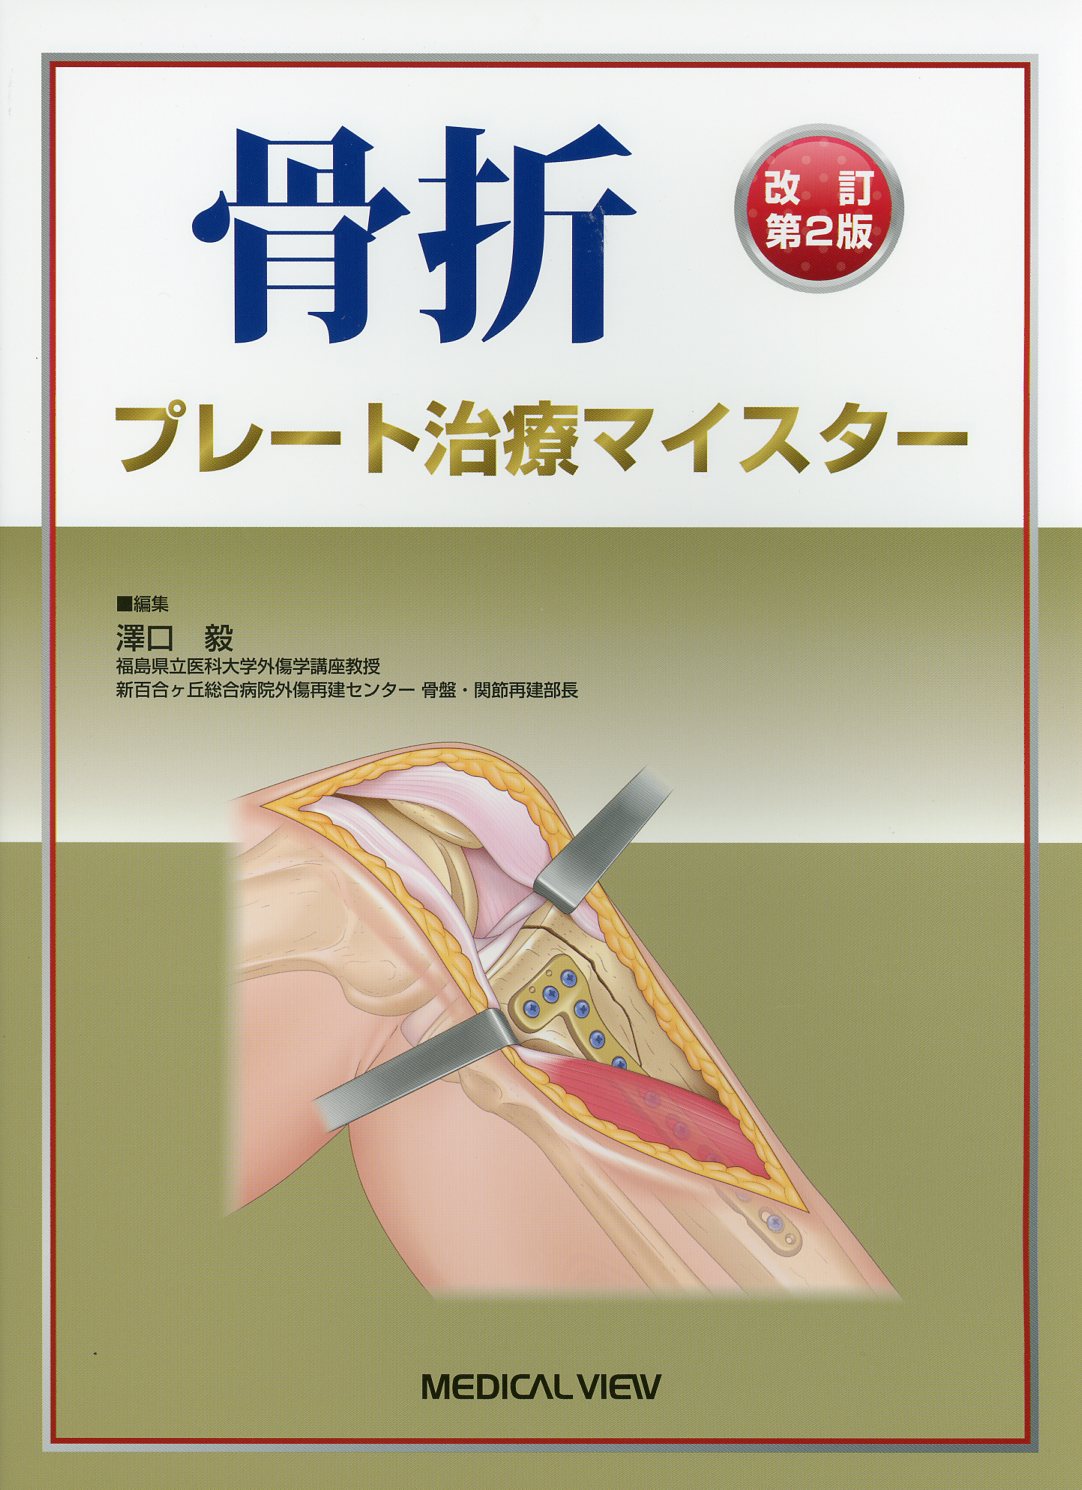 骨折プレート治療マイスター髄内釘治療マイスター、整形外科医のための手術解剖学図説本